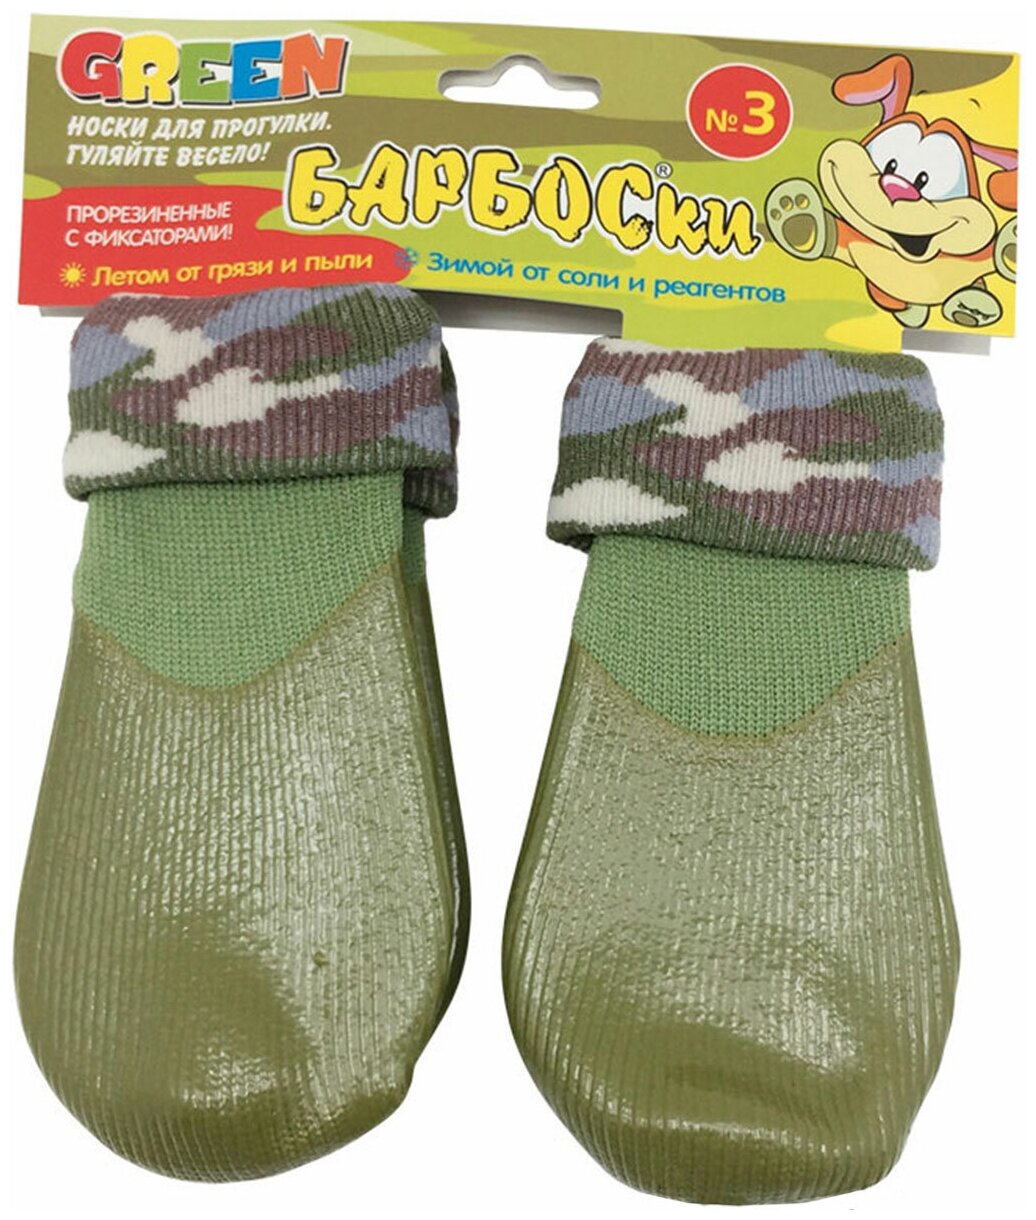 Носки для прогулки с высоким латексным покрытием с фиксатором Барбоски зеленые (6)